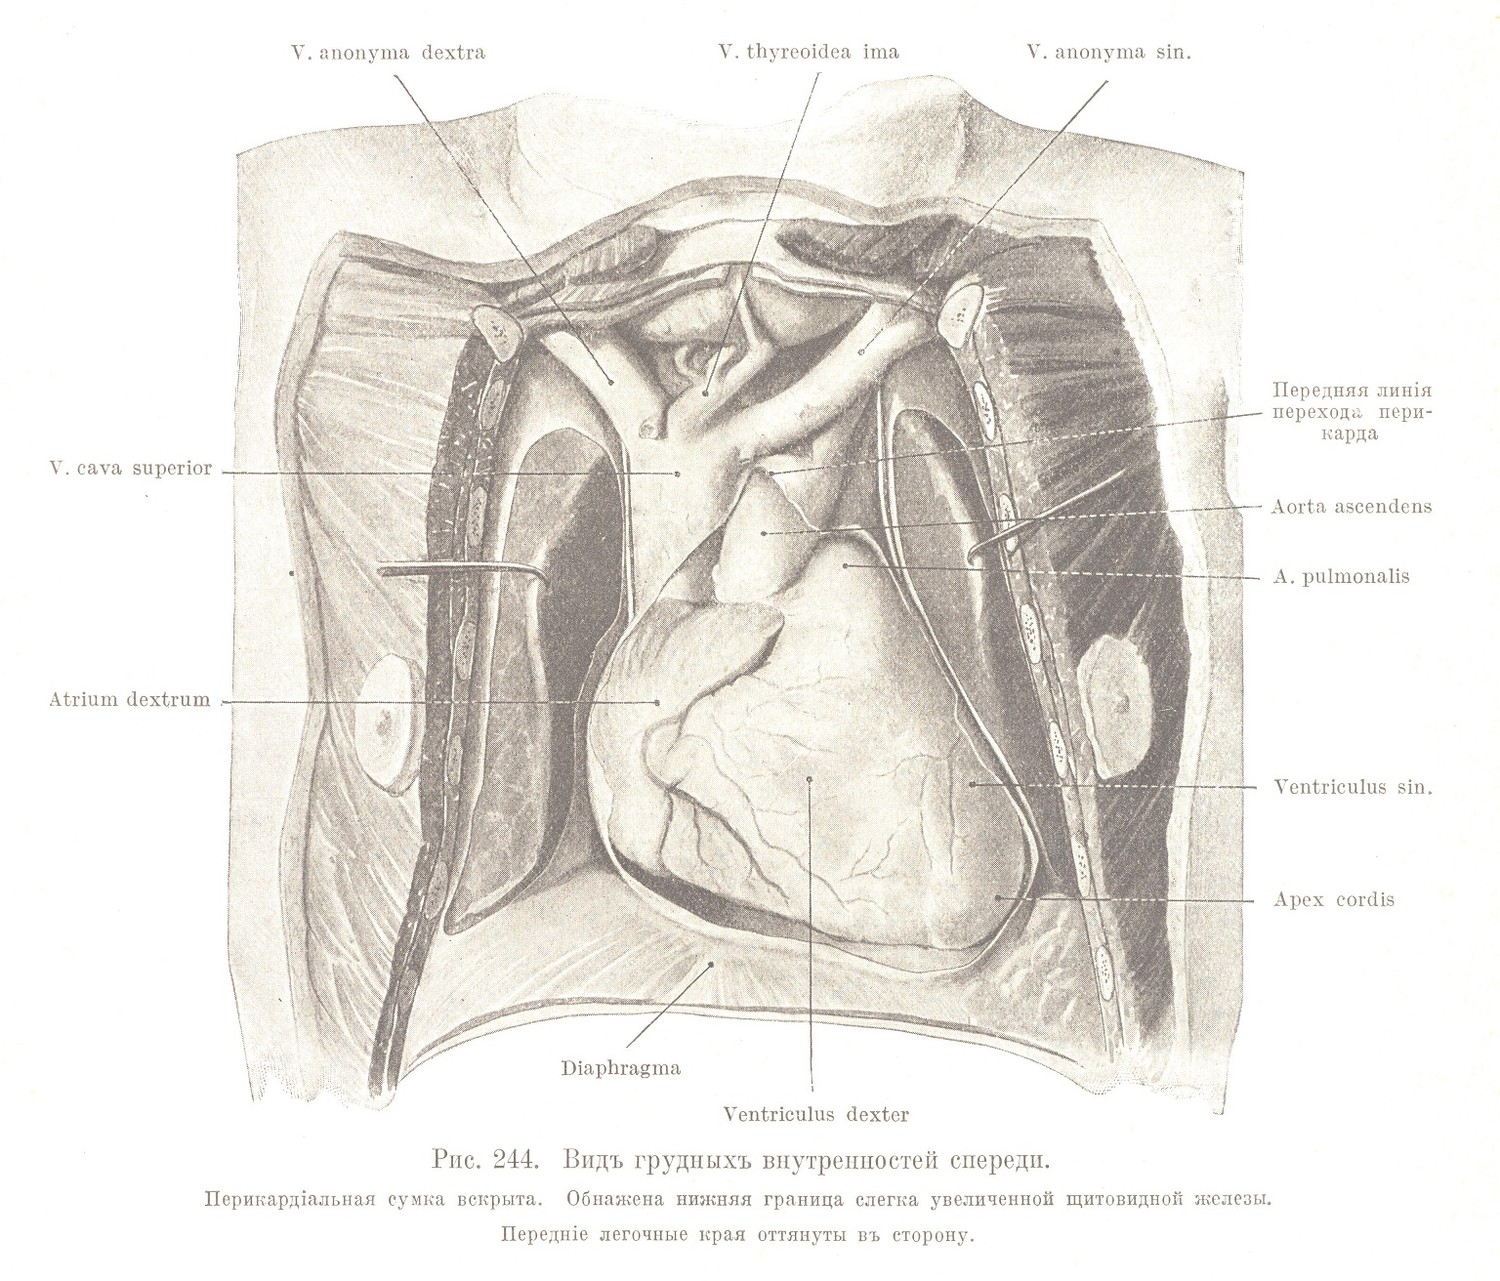 Видъ грудныхъ внутренностей спереди. Перикардіальная сумка вскрыта. Обнажена нижняя граница слегка увеличенной щитовидной железы. 